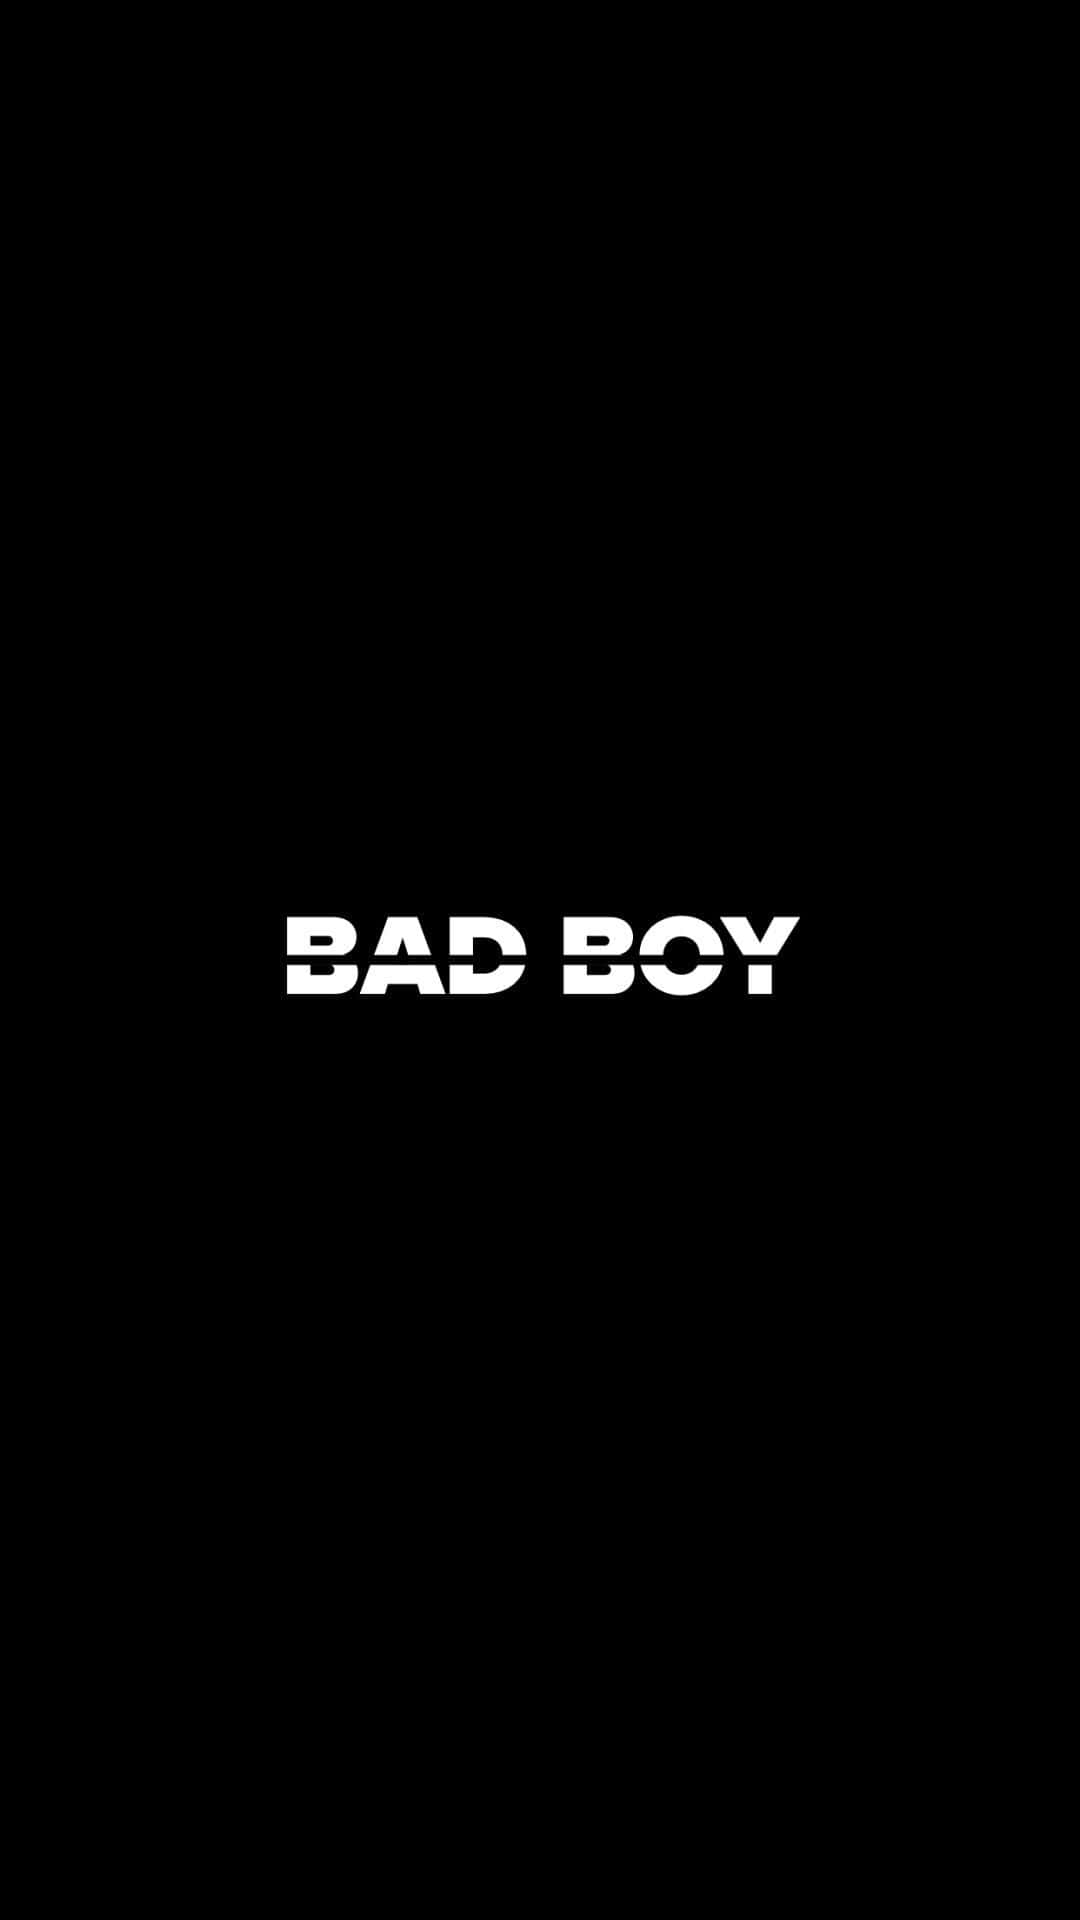 Badboy-logo Auf Schwarzem Hintergrund